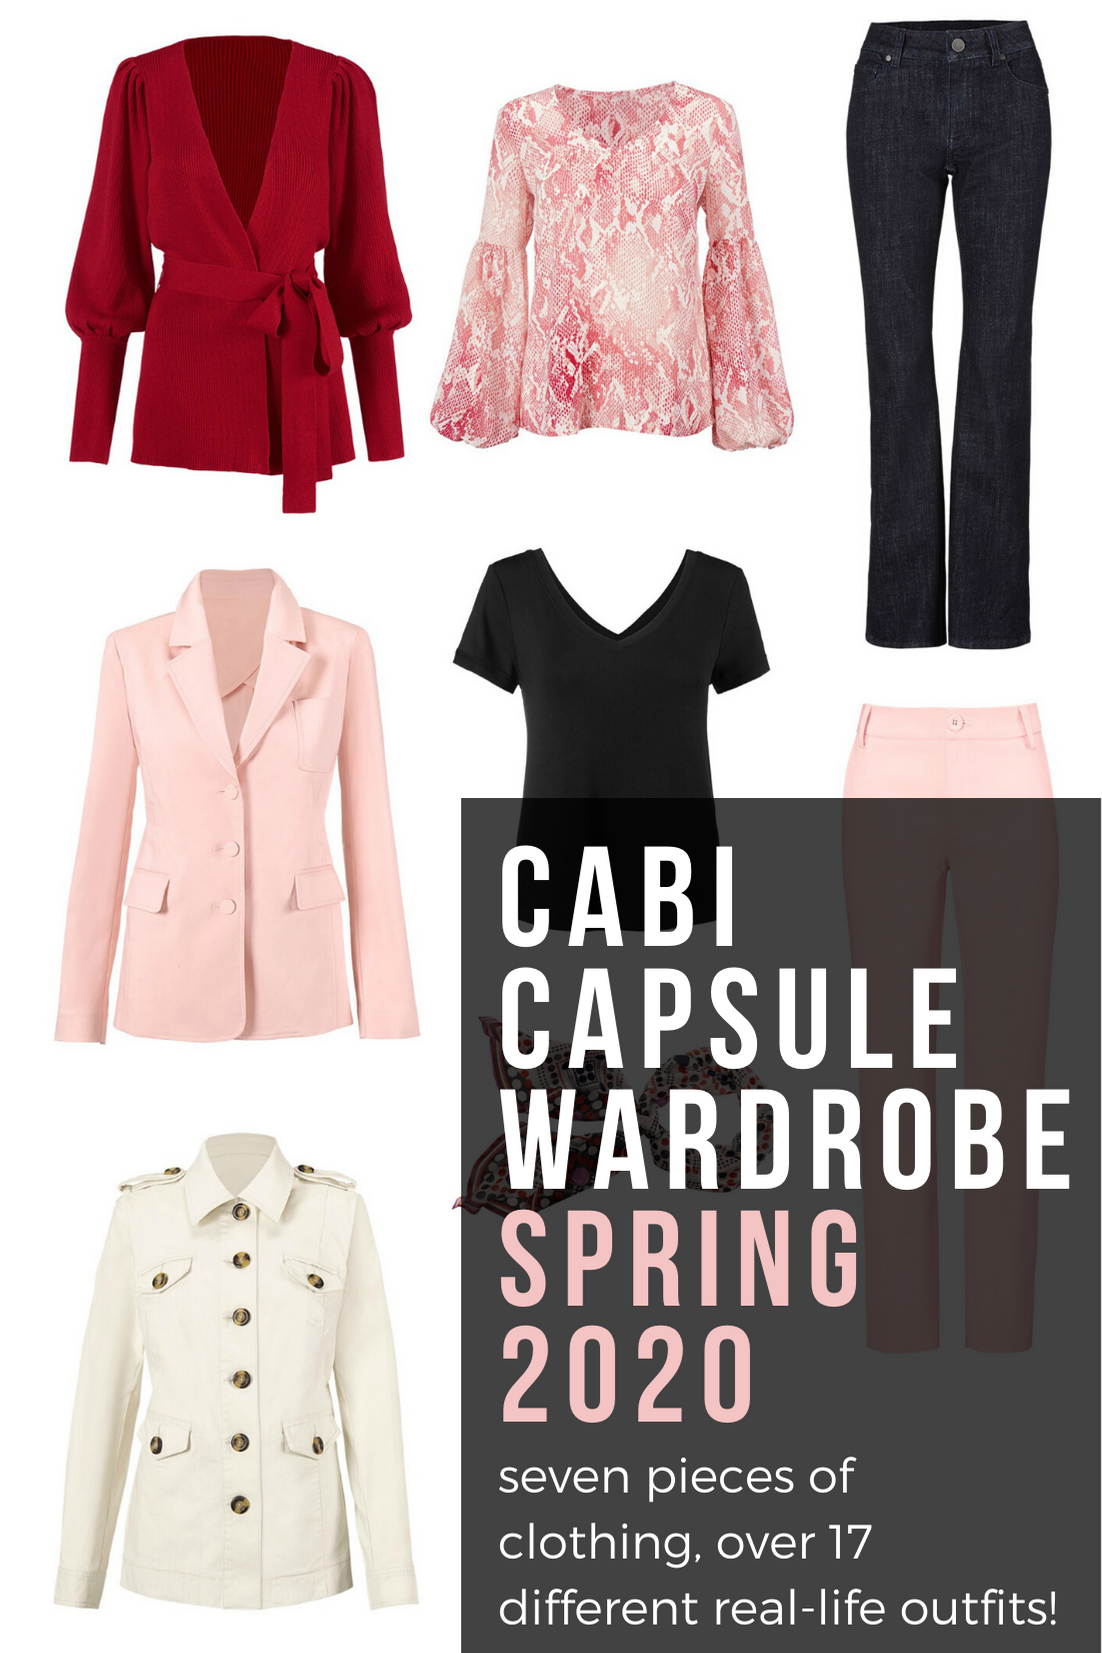 Cabi Capsule Wardrobe for Spring 2020